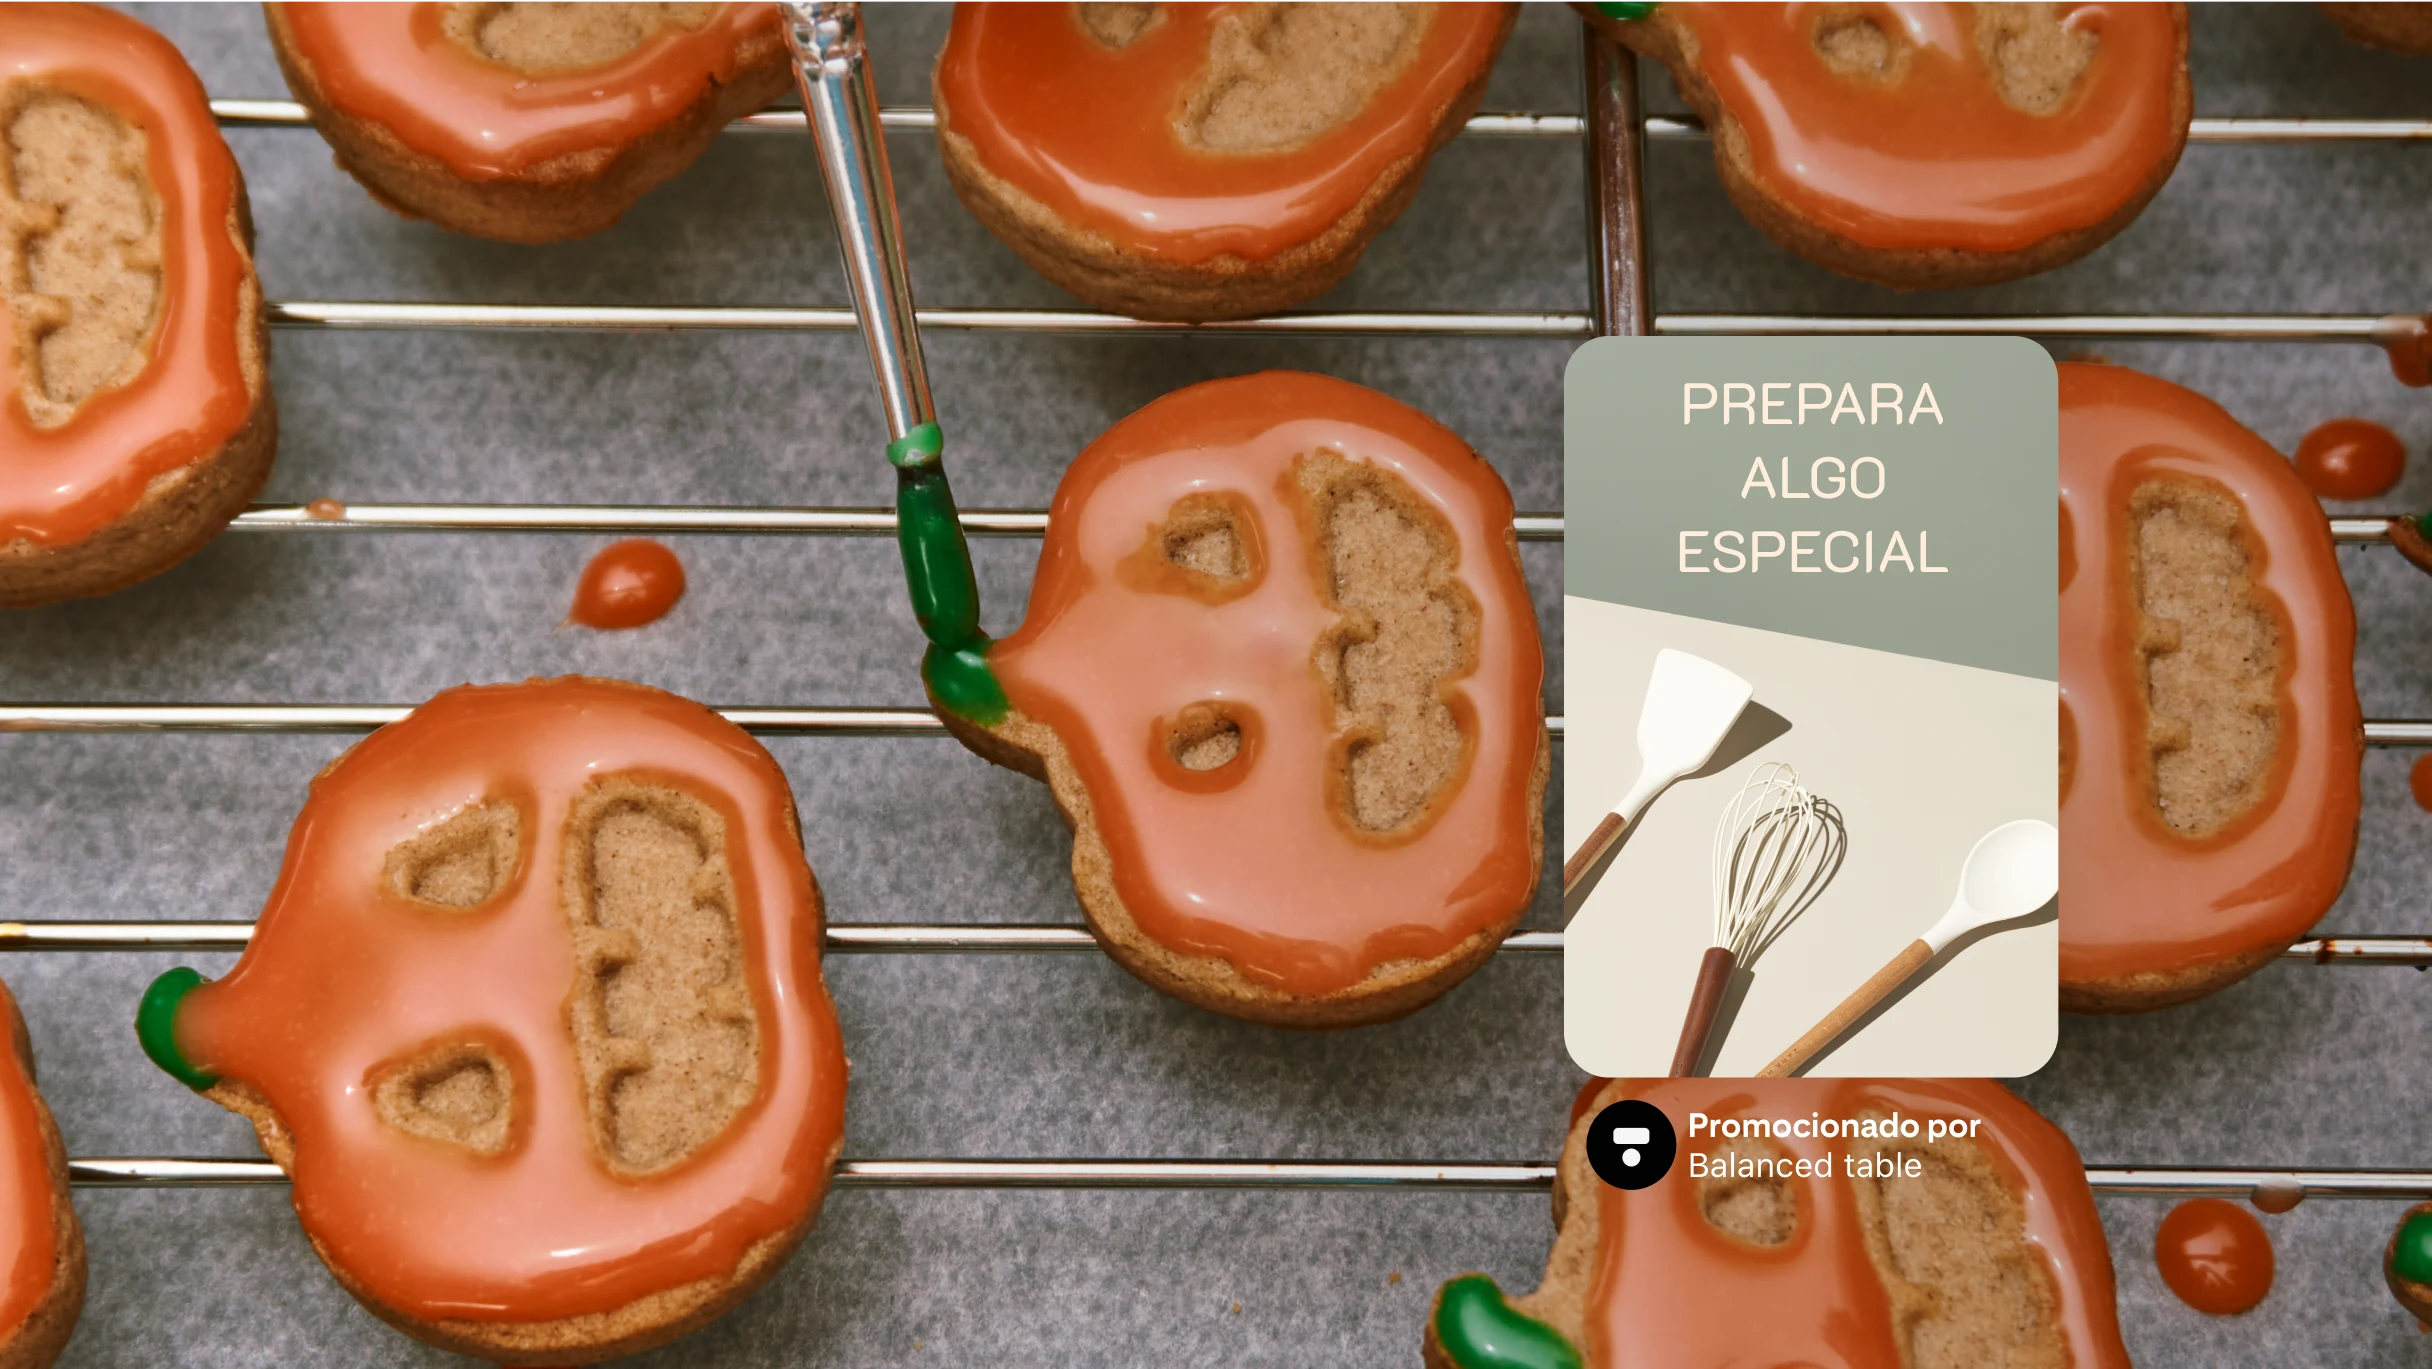 Imagen de ancho completo con una bandeja de galletas decoradas como calabazas; a la derecha, se muestra un Pin con un batidor y el texto “Prepara algo especial”.